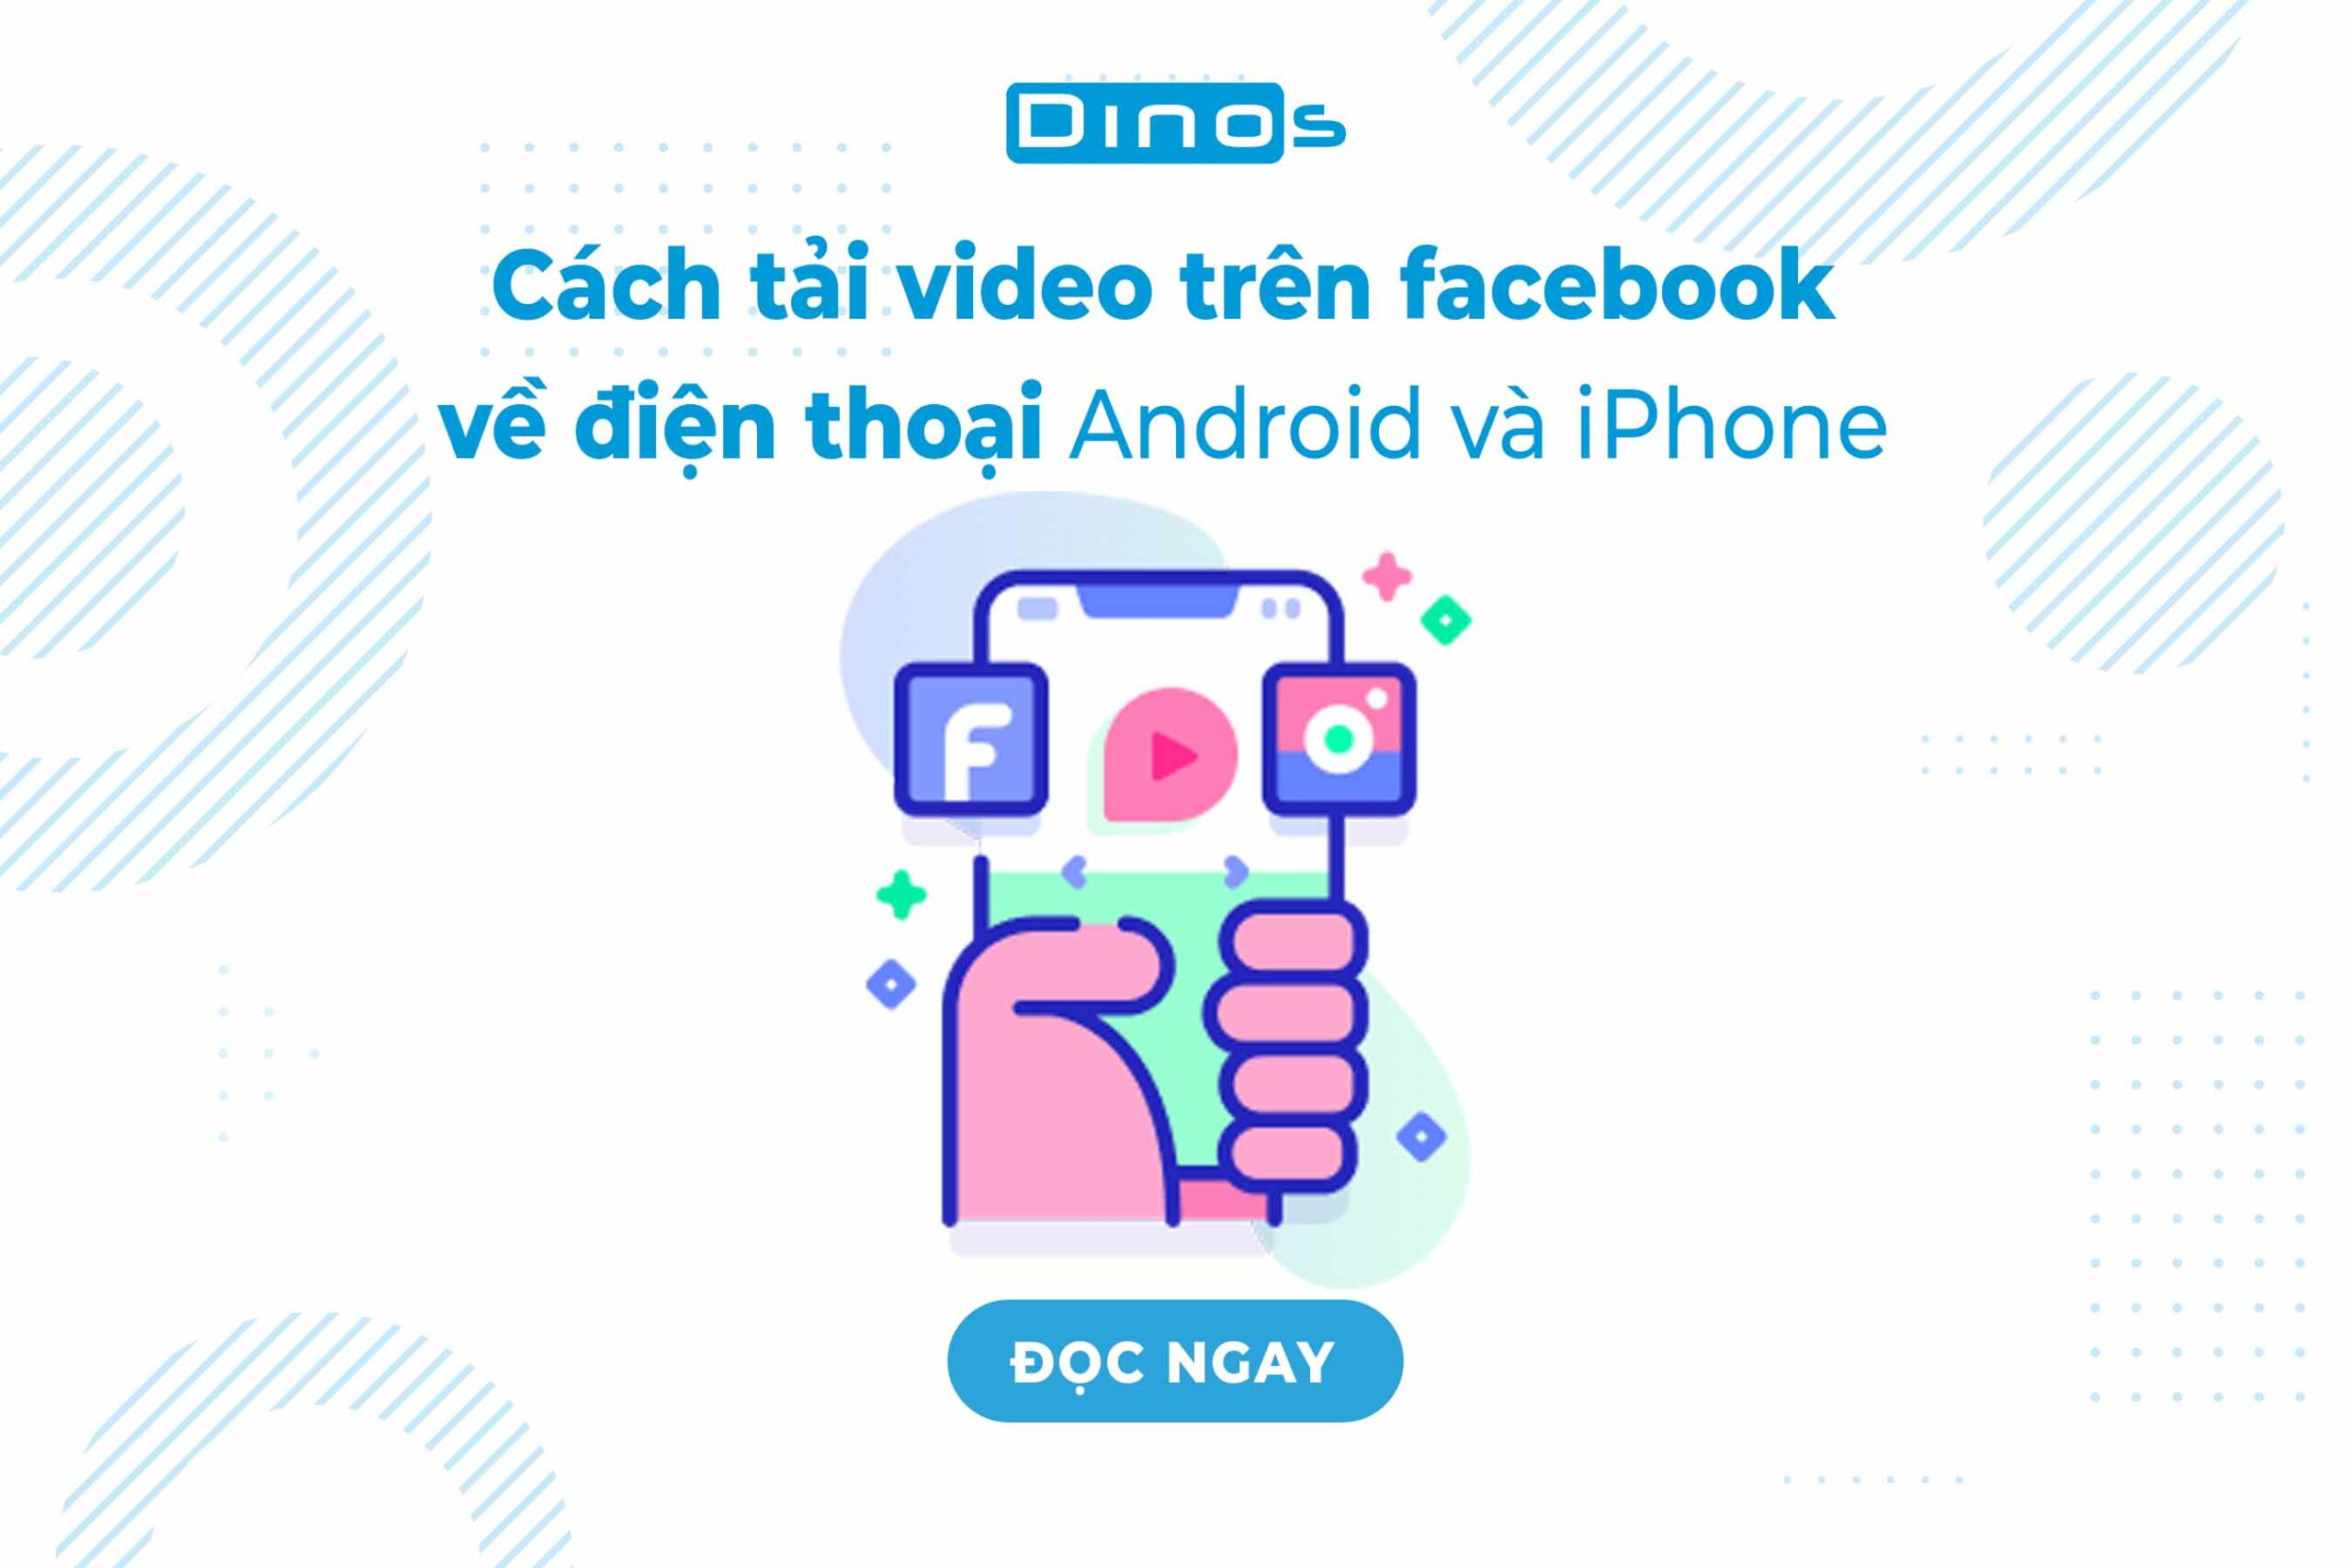 cach-tai-video-tren-facebook-ve-dien-thoai-Android-va-iphone